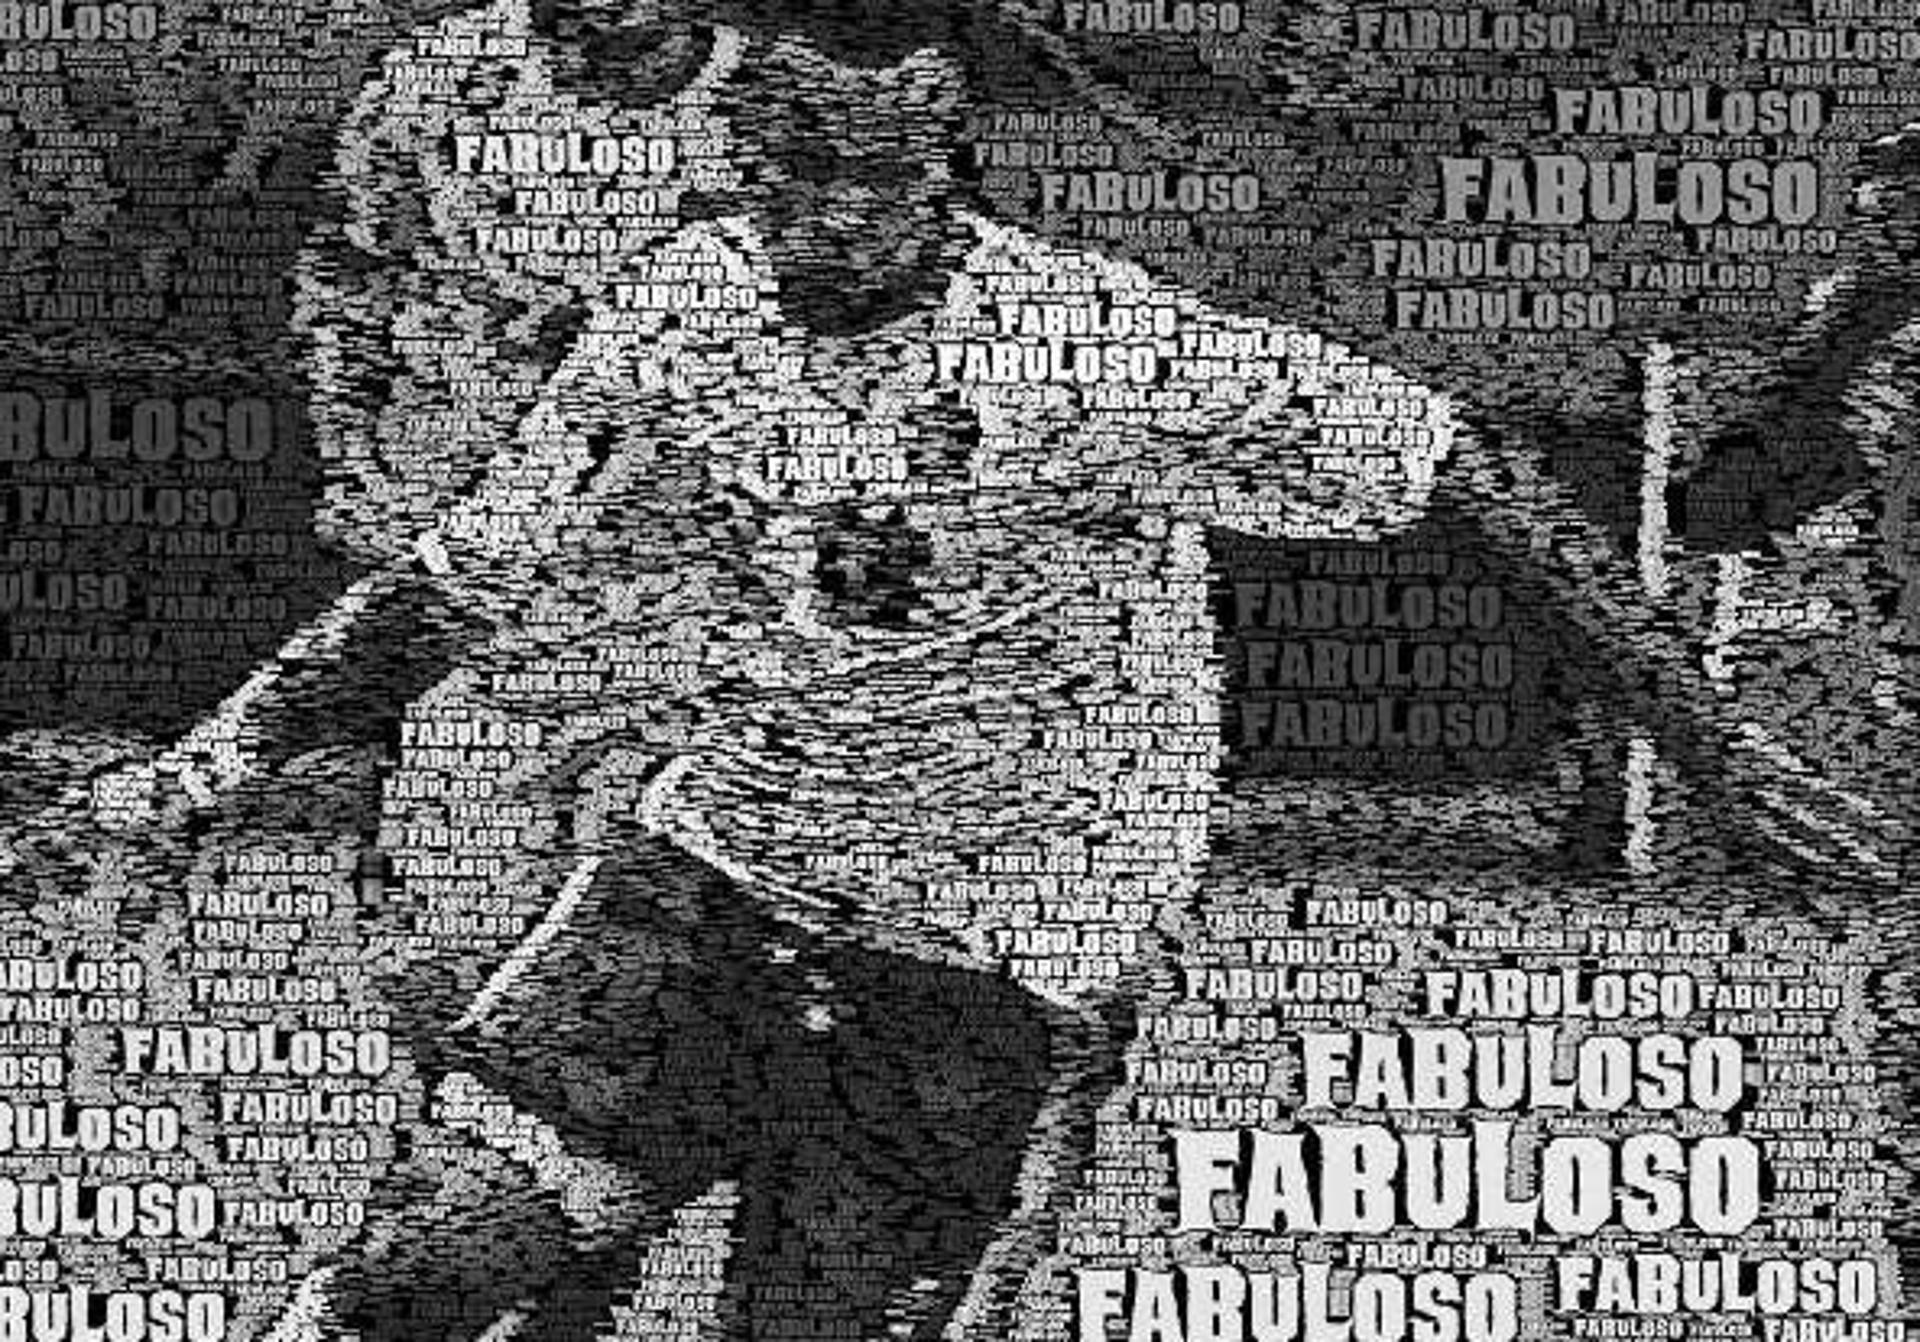 Luis Fabiano colocou esta imagem no Instagram neste domingo. Confira &nbsp;a seguir a galeria especial do LANCE! sobre o atleta